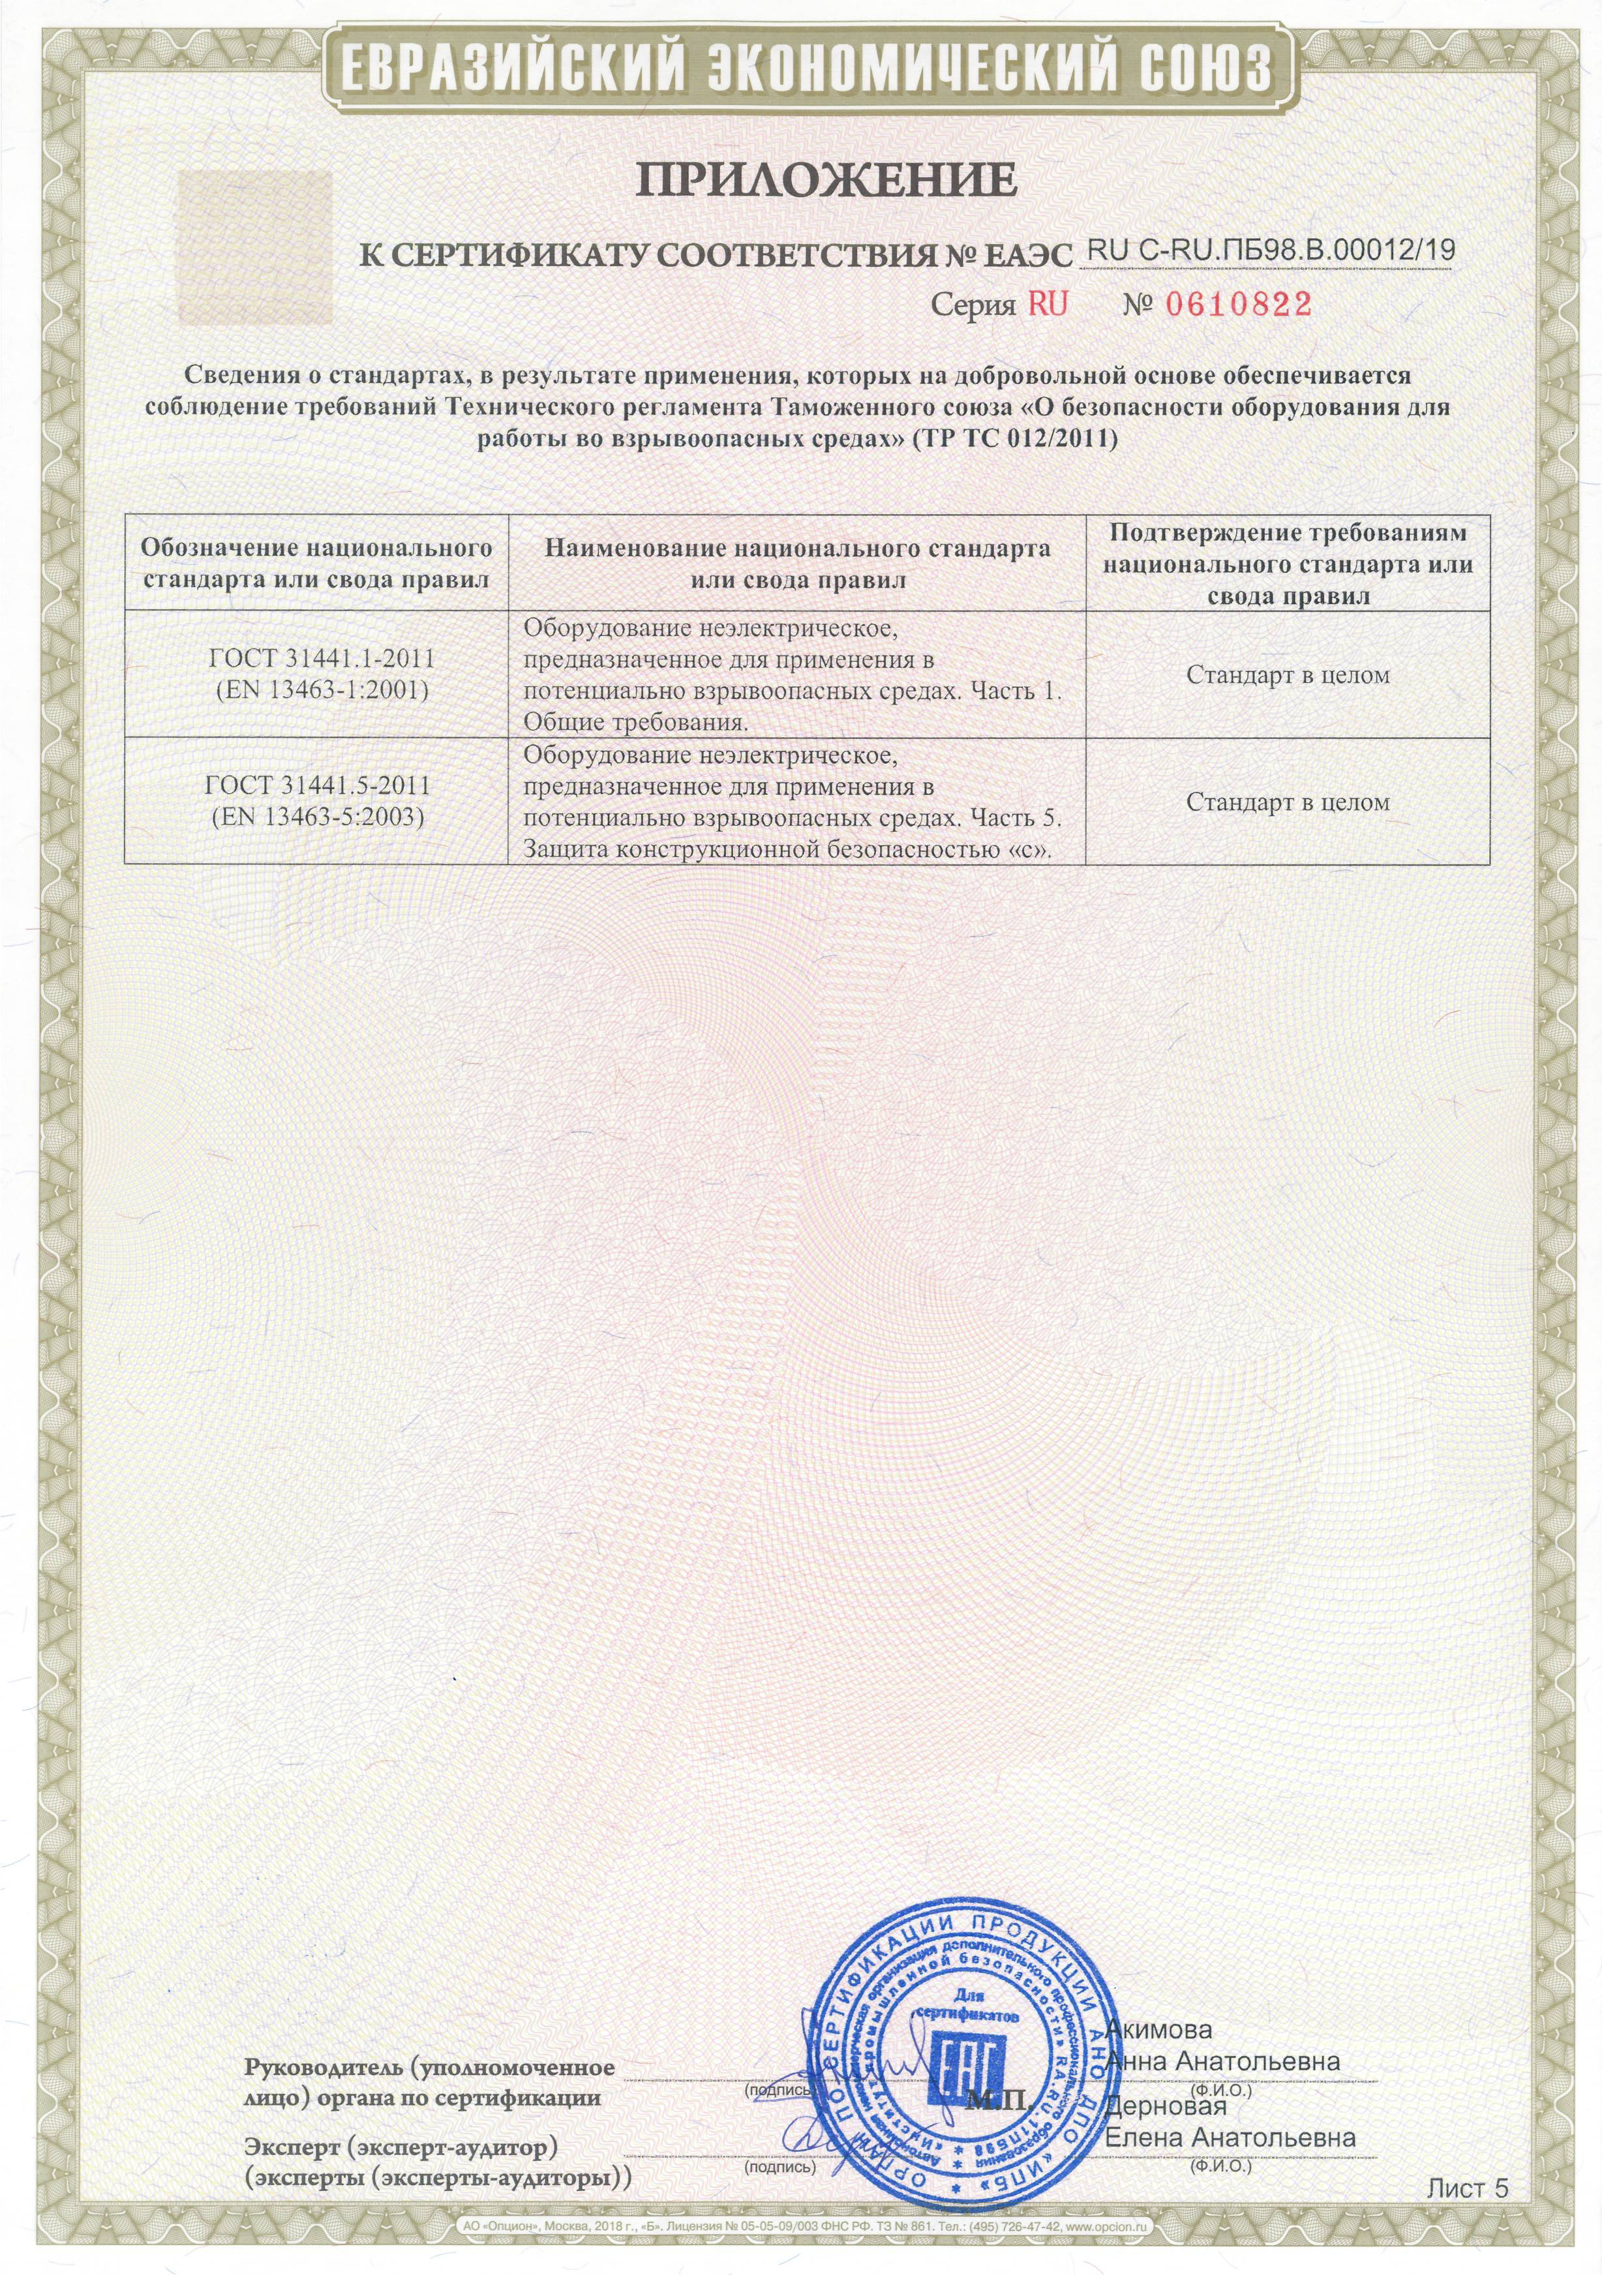 Сертификат соответсвия Таможенного союза